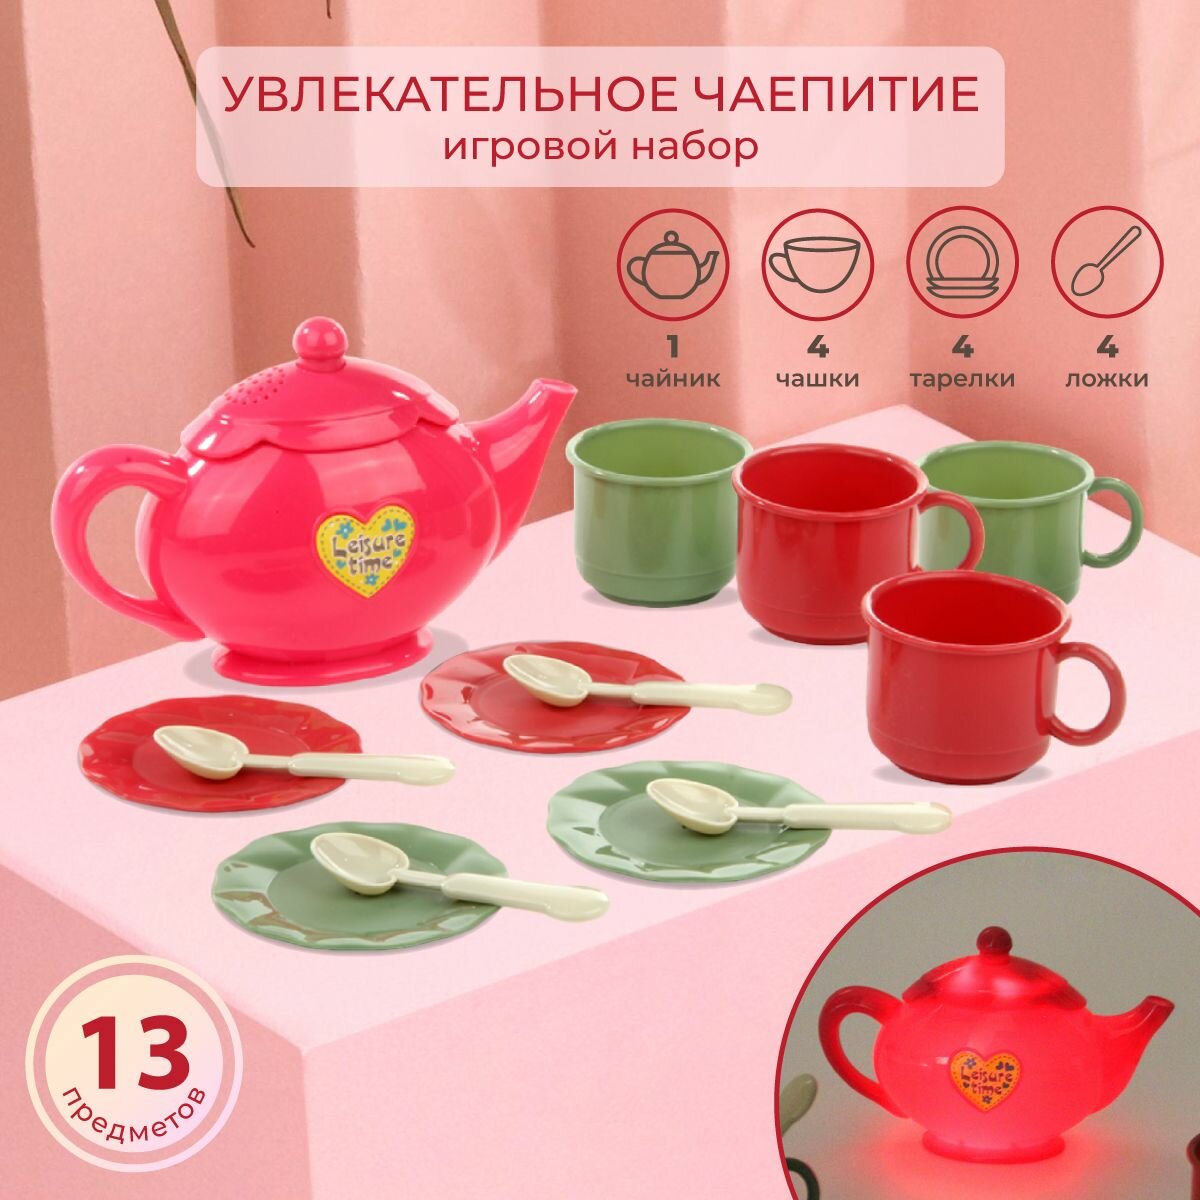 Детский набор игрушечной посуды Чаепитие, 13 предметов, Veld Co / Кухонный игровой набор со светом и звуком для детей